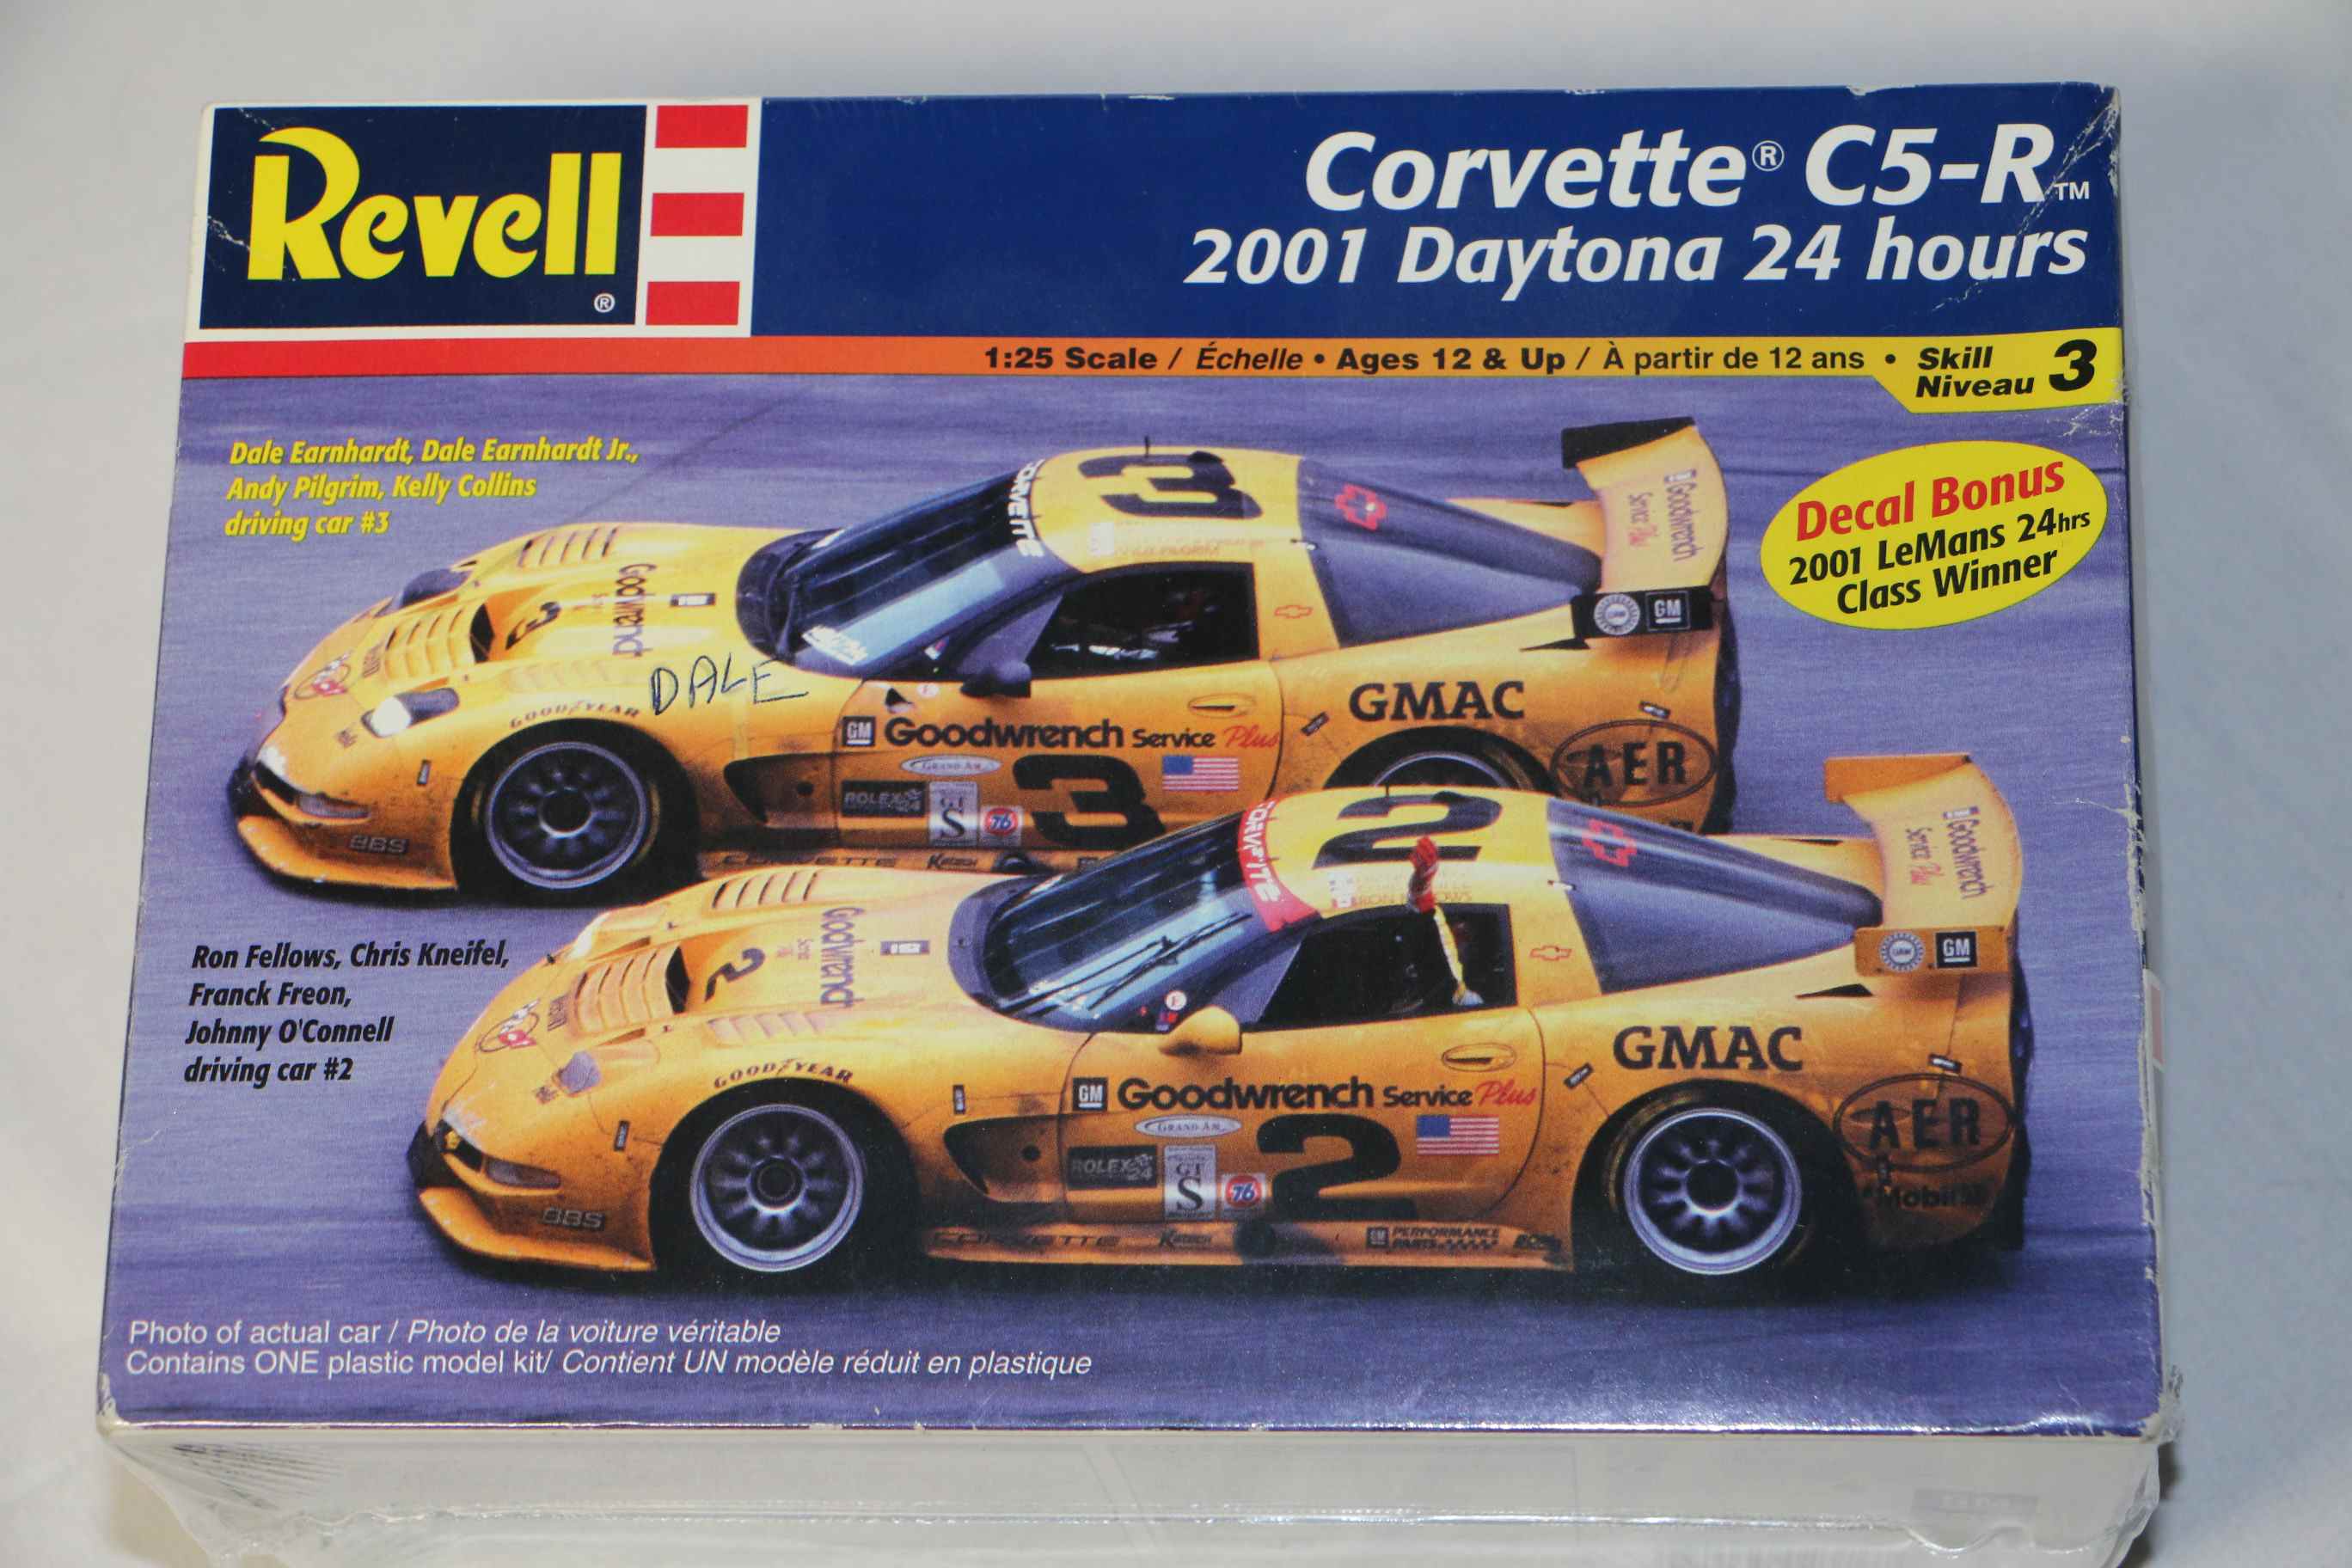 REV2376 - Revell 1/25 Corvette C5-R 2001 Daytona 24 Hrs